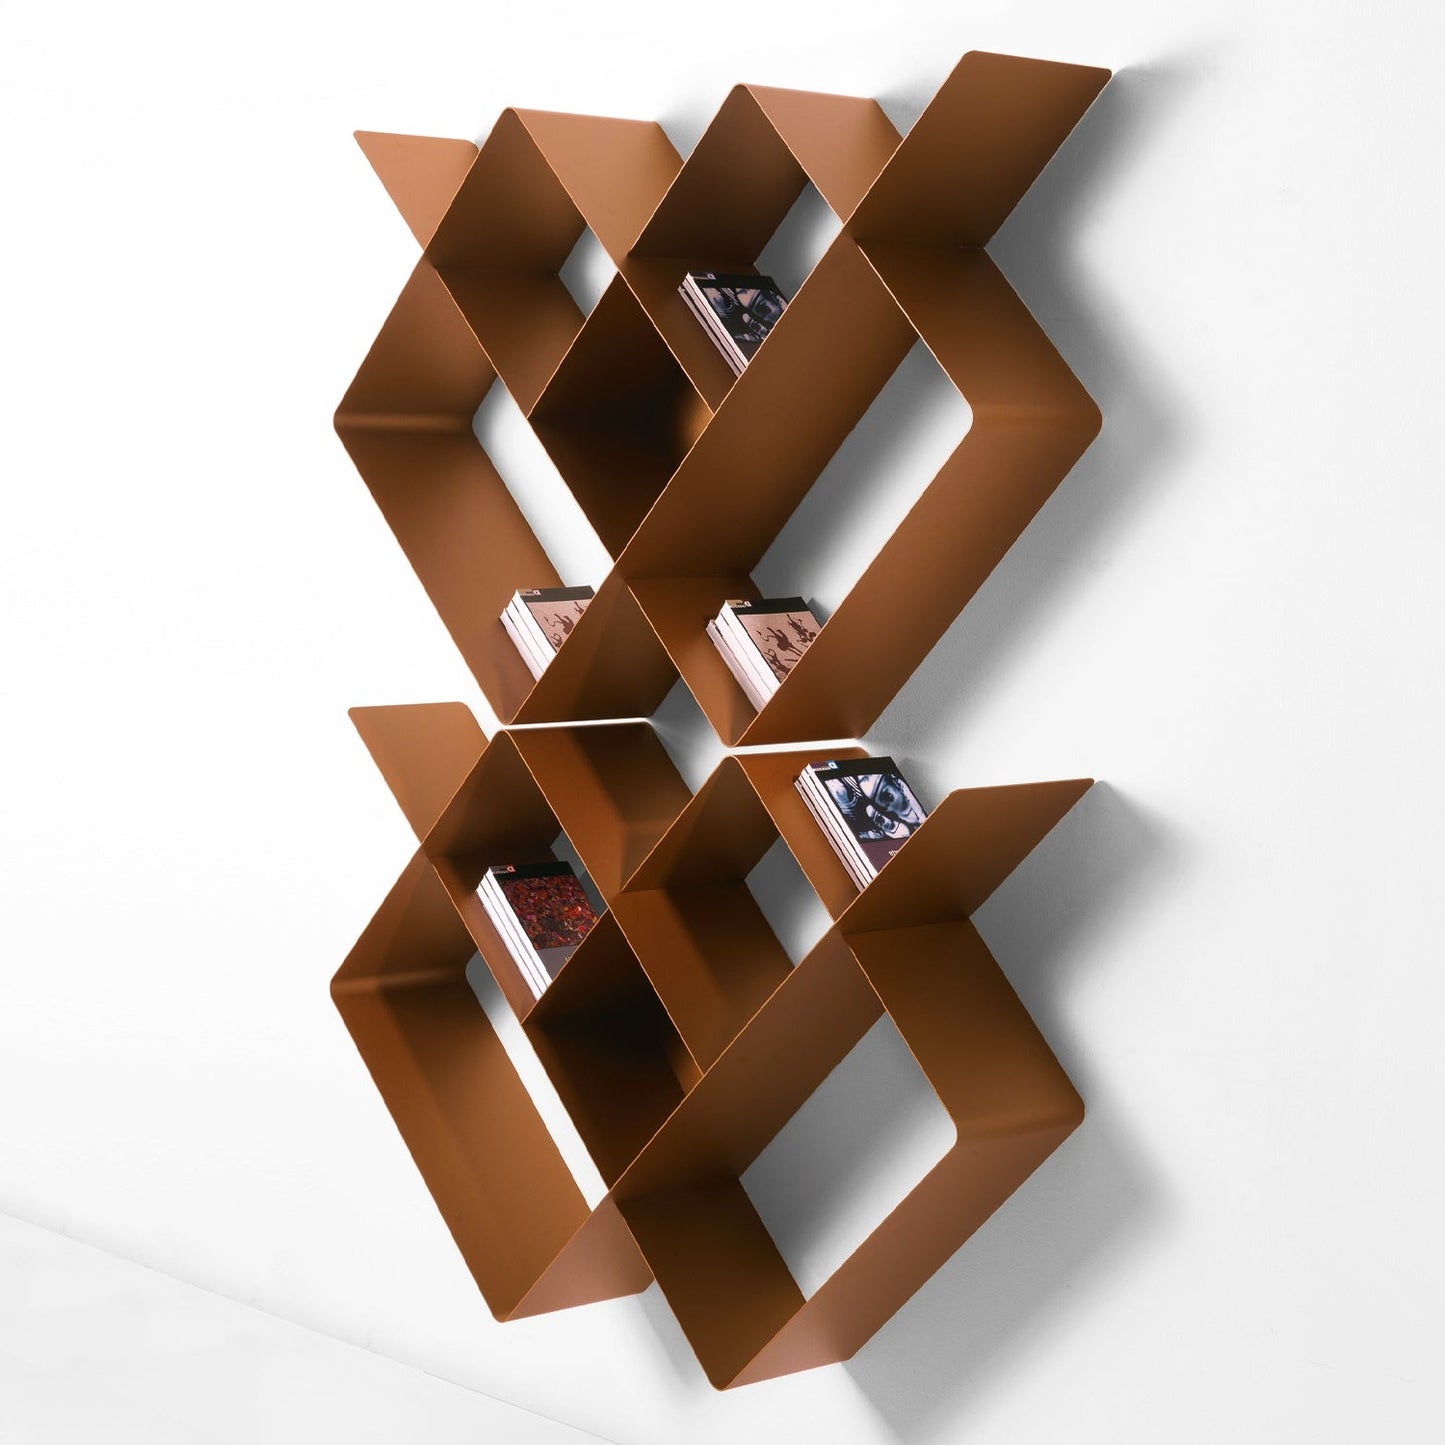 Mondrian Bookcase Composition 01 by Pezzani